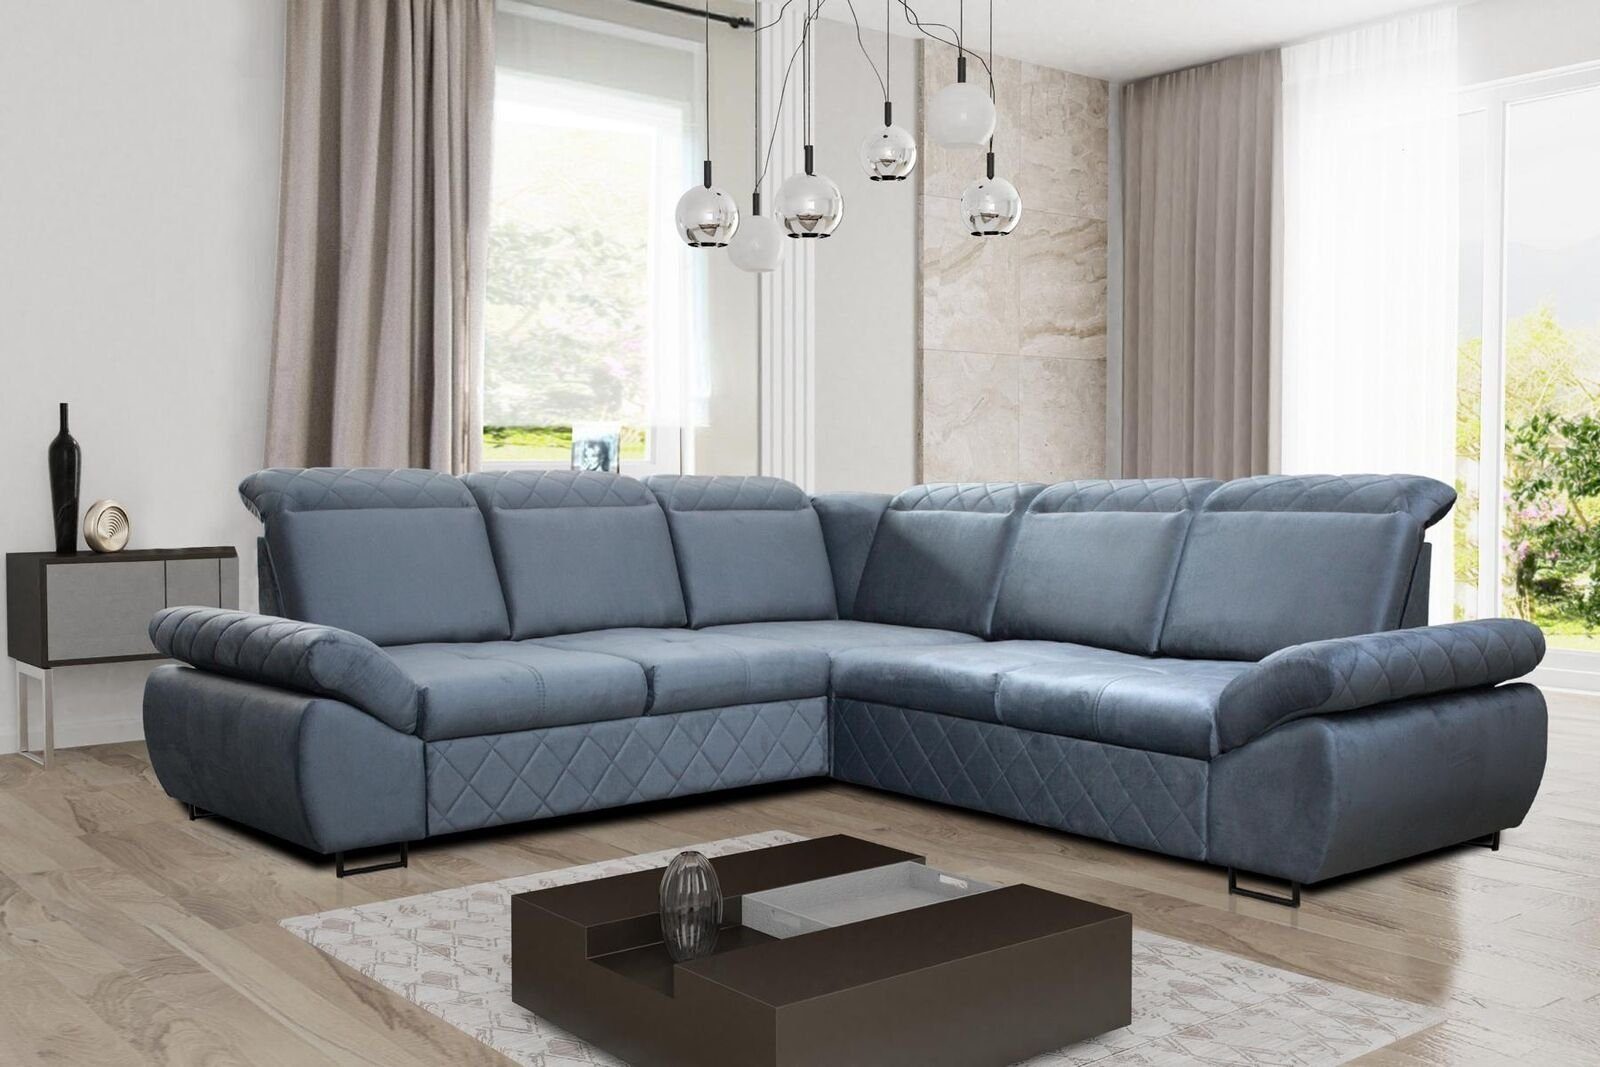 JVmoebel Ecksofa Bettfunktion Ecksofa, Couchs Textil Design Mit Neu LForm Blau Moderne Möbel Sofas Wohnzimmer